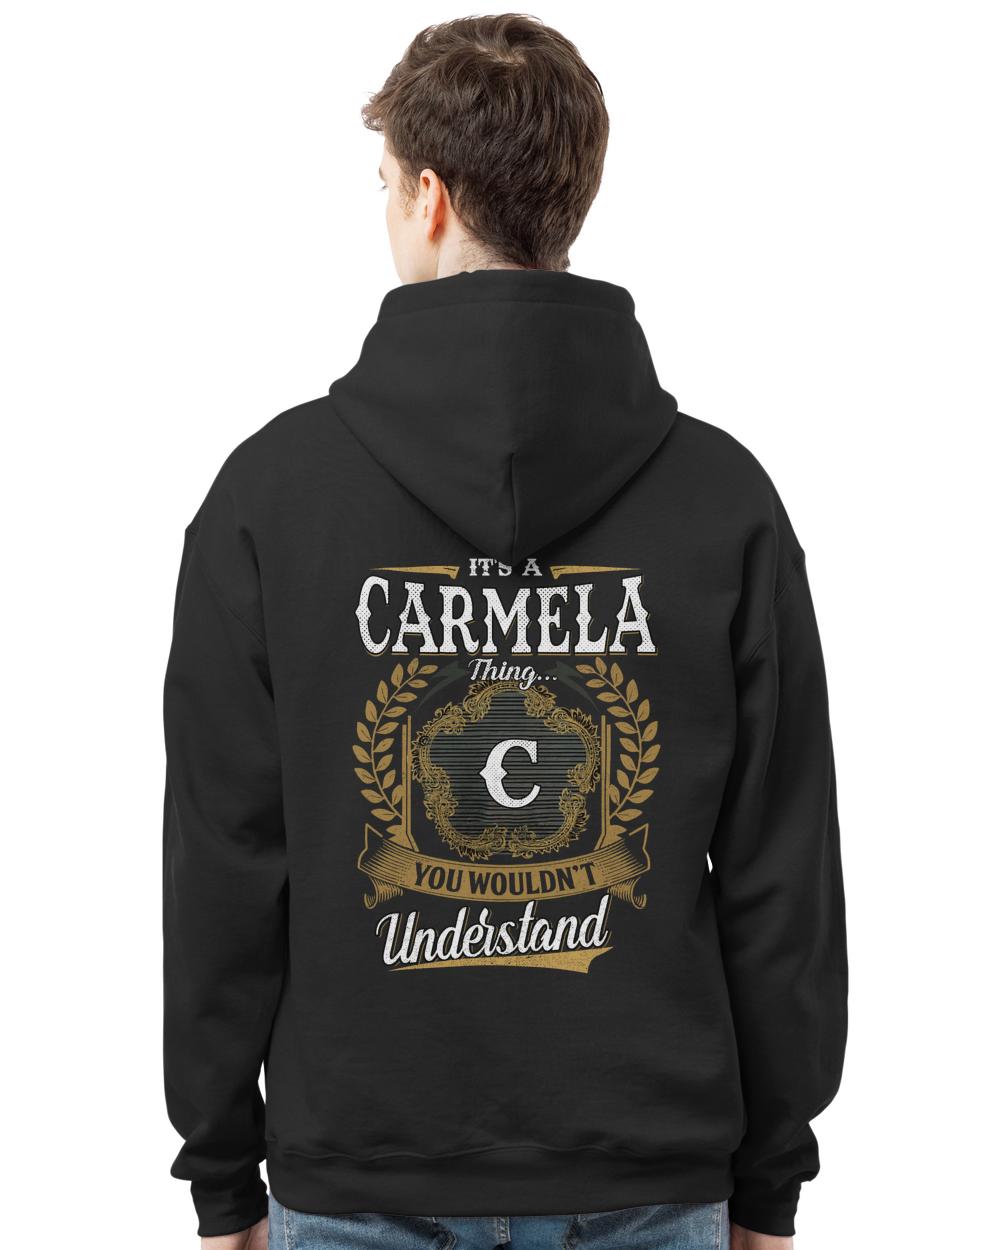 CARMELA-13K-1-01